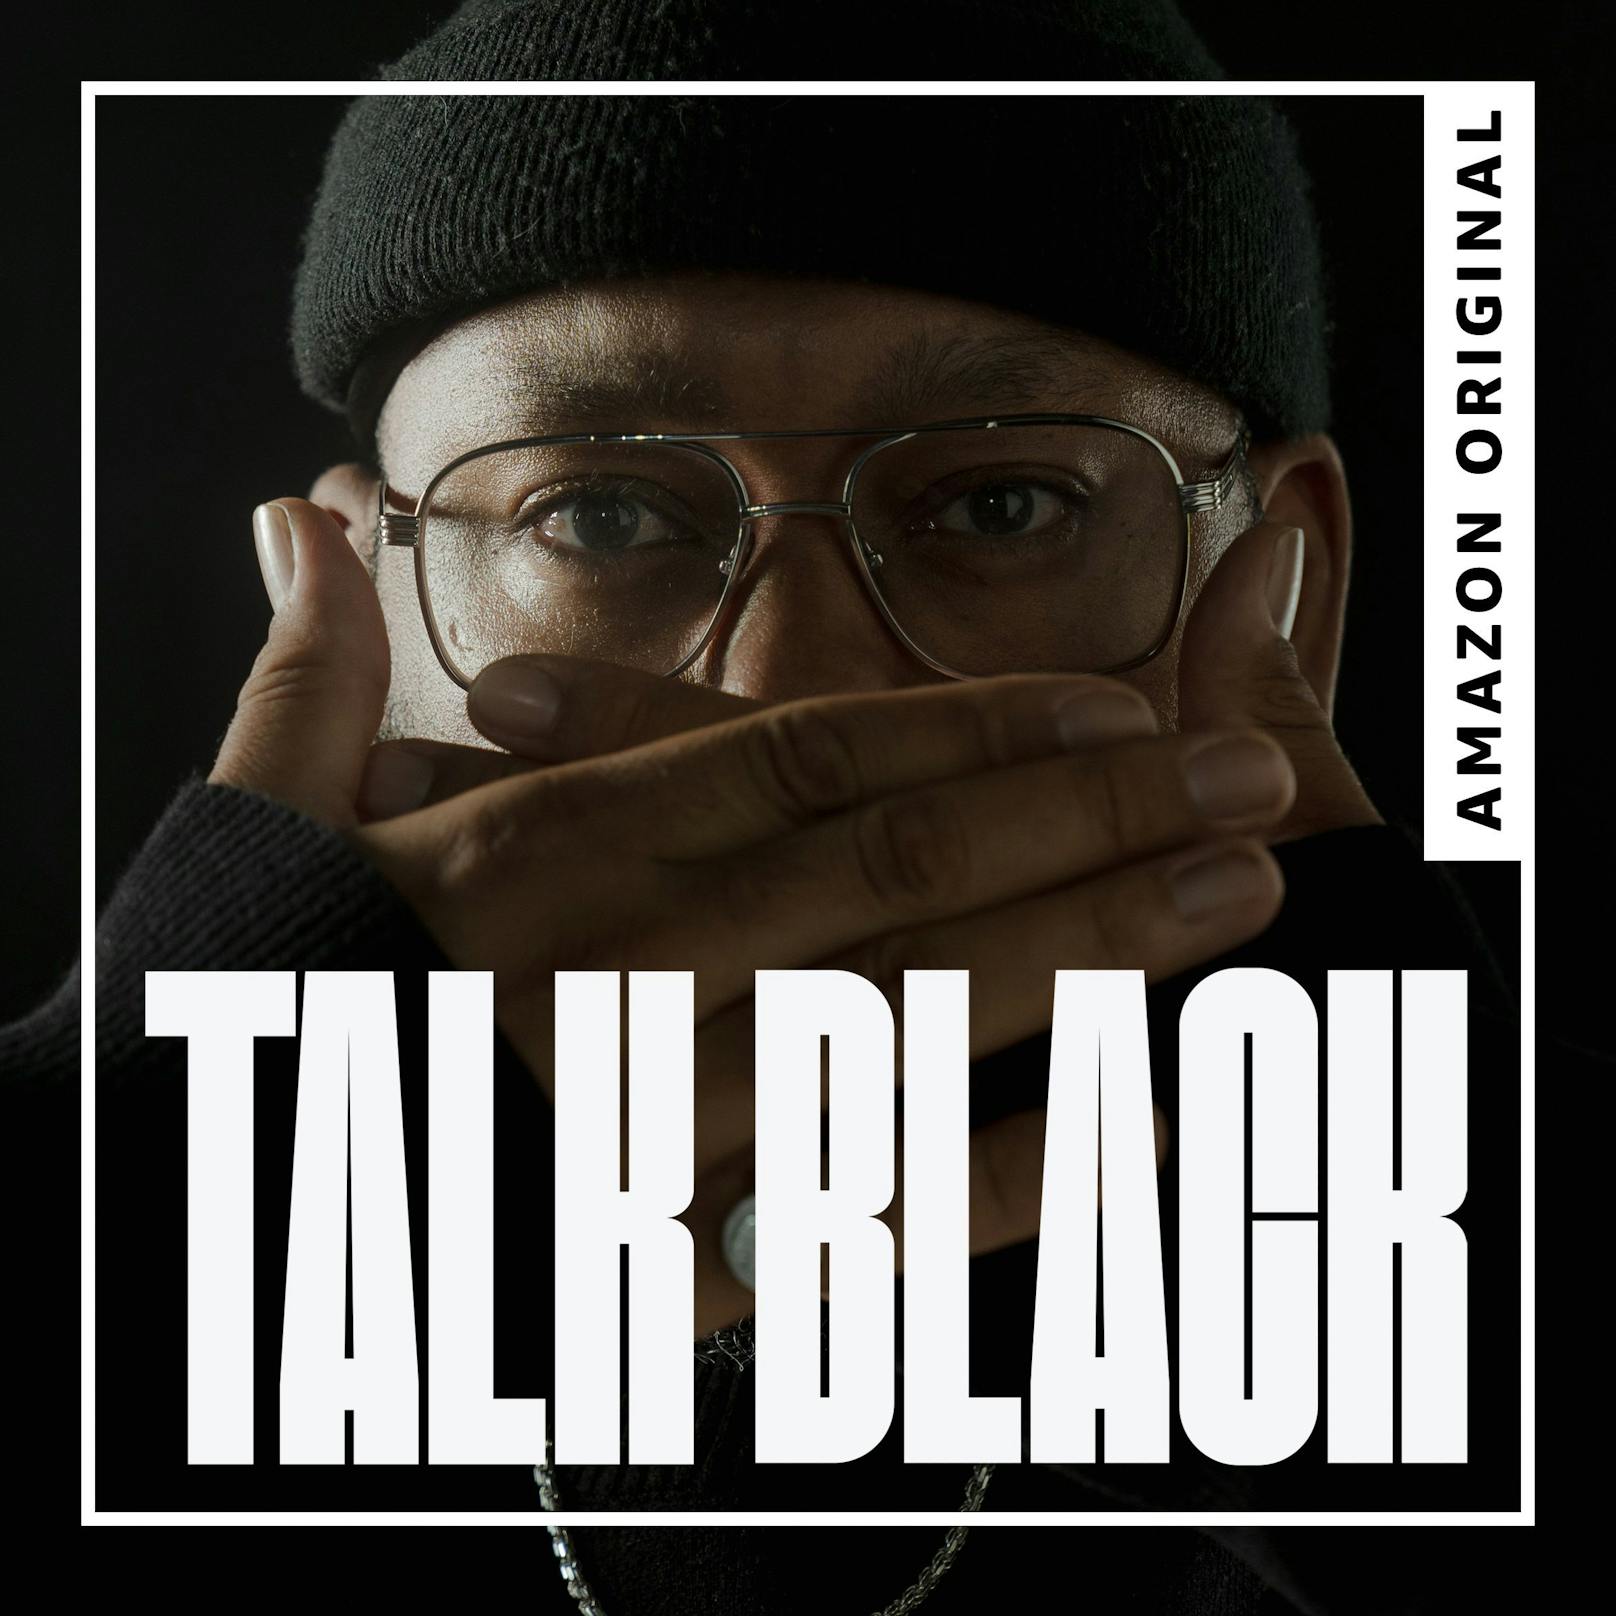 Amazon Music veröffentlicht Amazon Original Podcast Talk Black - Leben trotz Rassismus von und mit Roger Rekless.